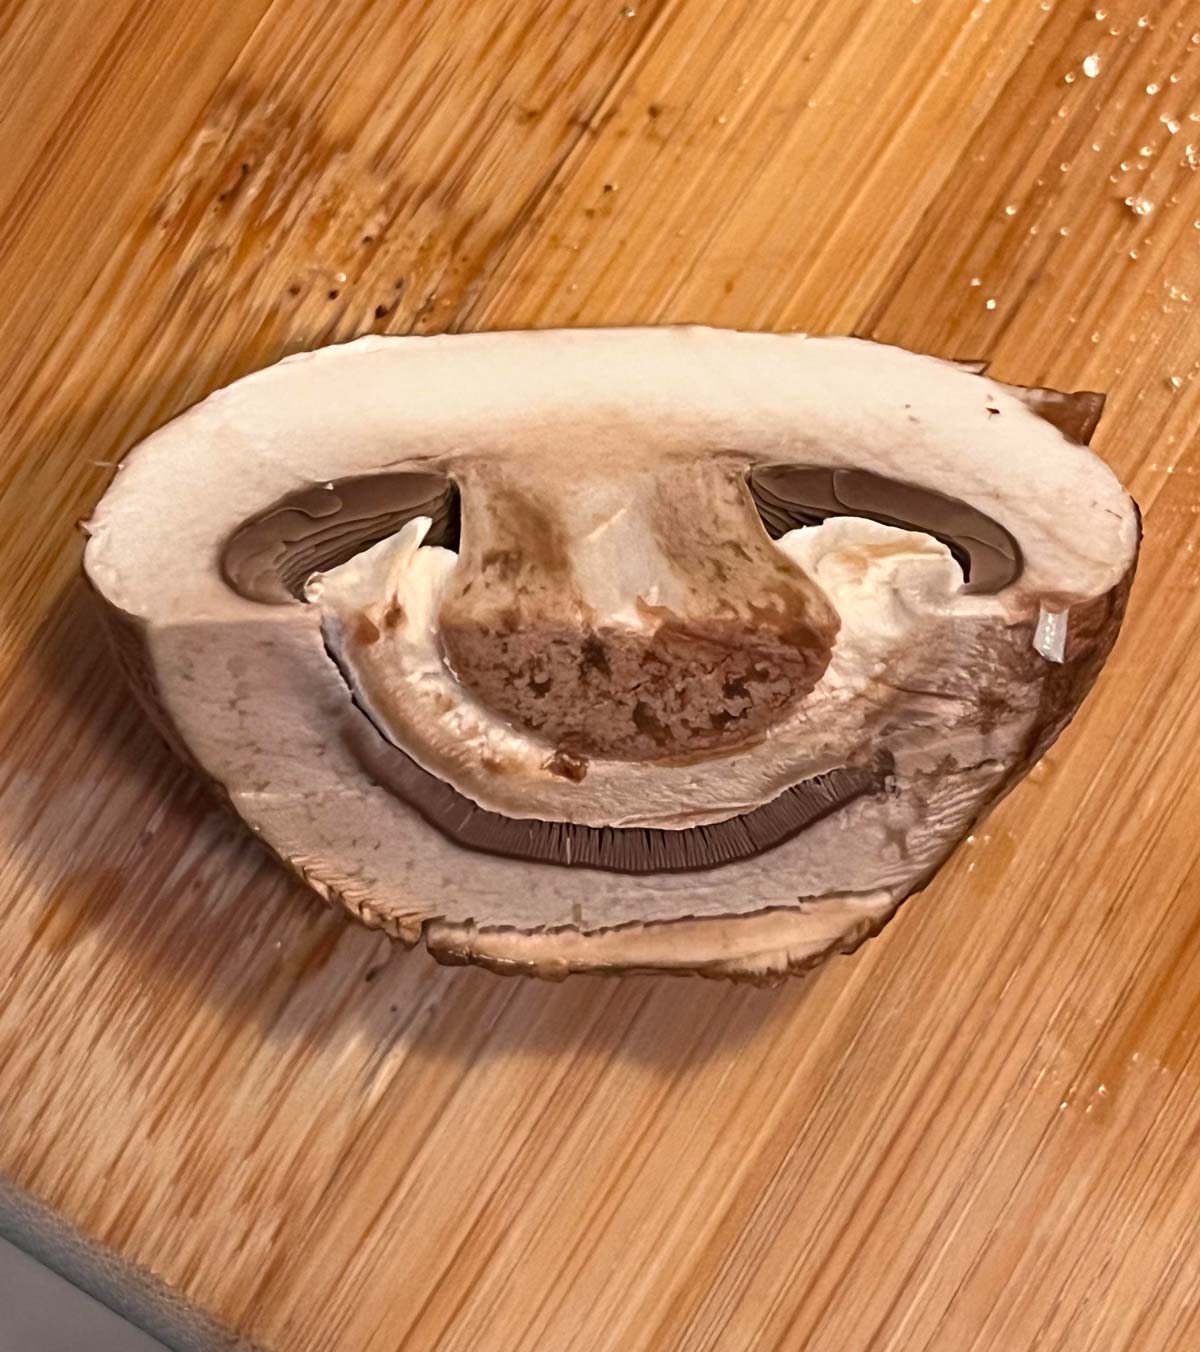 Mushroom I chopped looks like a sloth